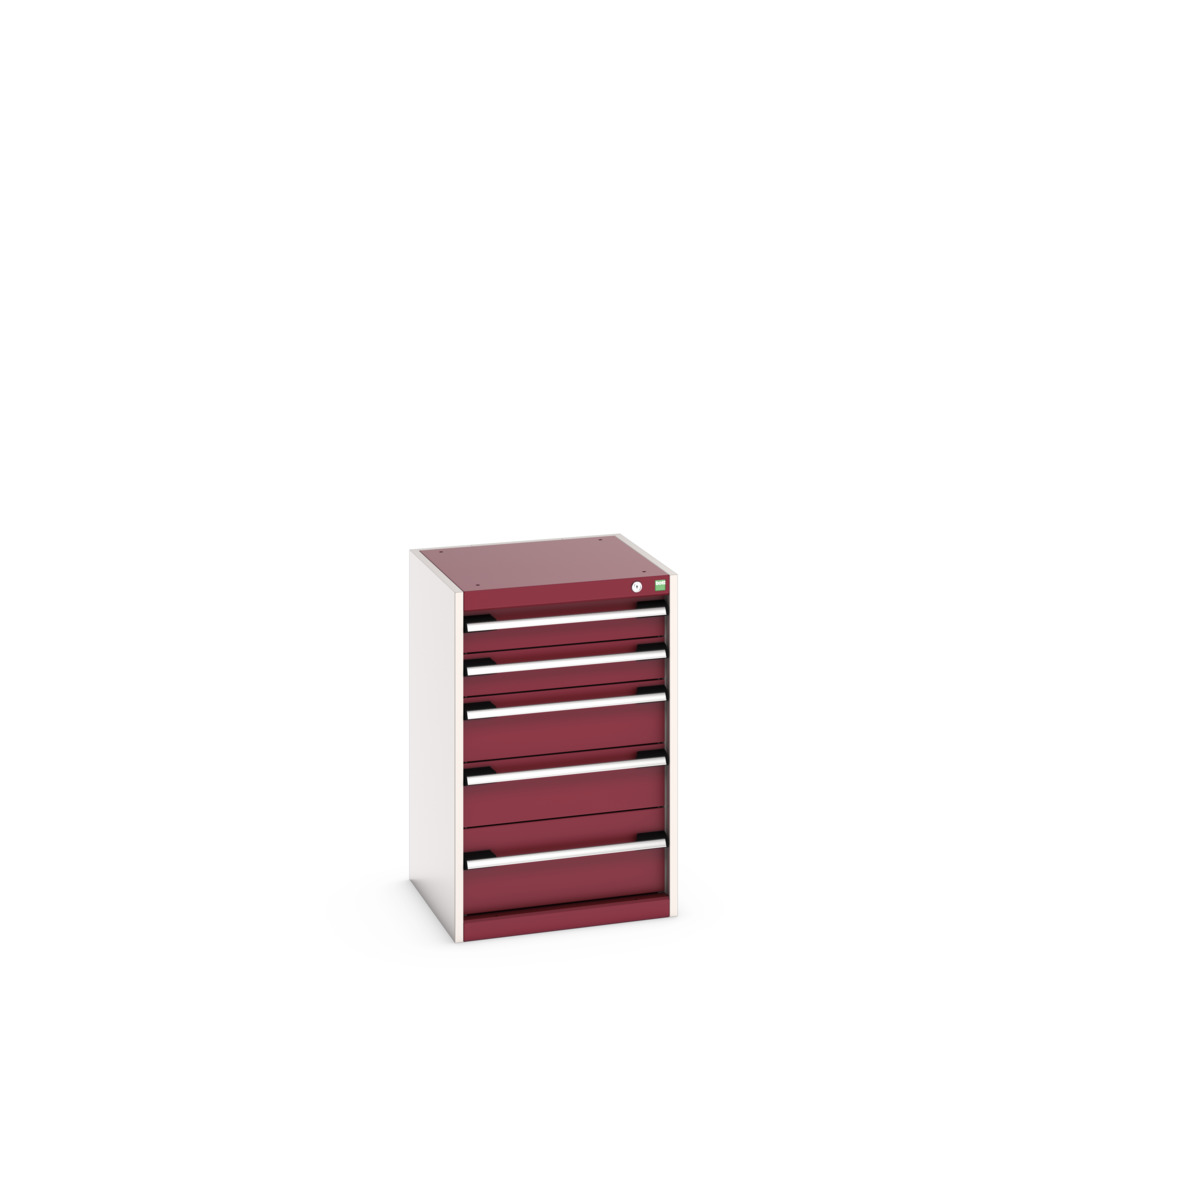 40010027.24V - cubio drawer cabinet